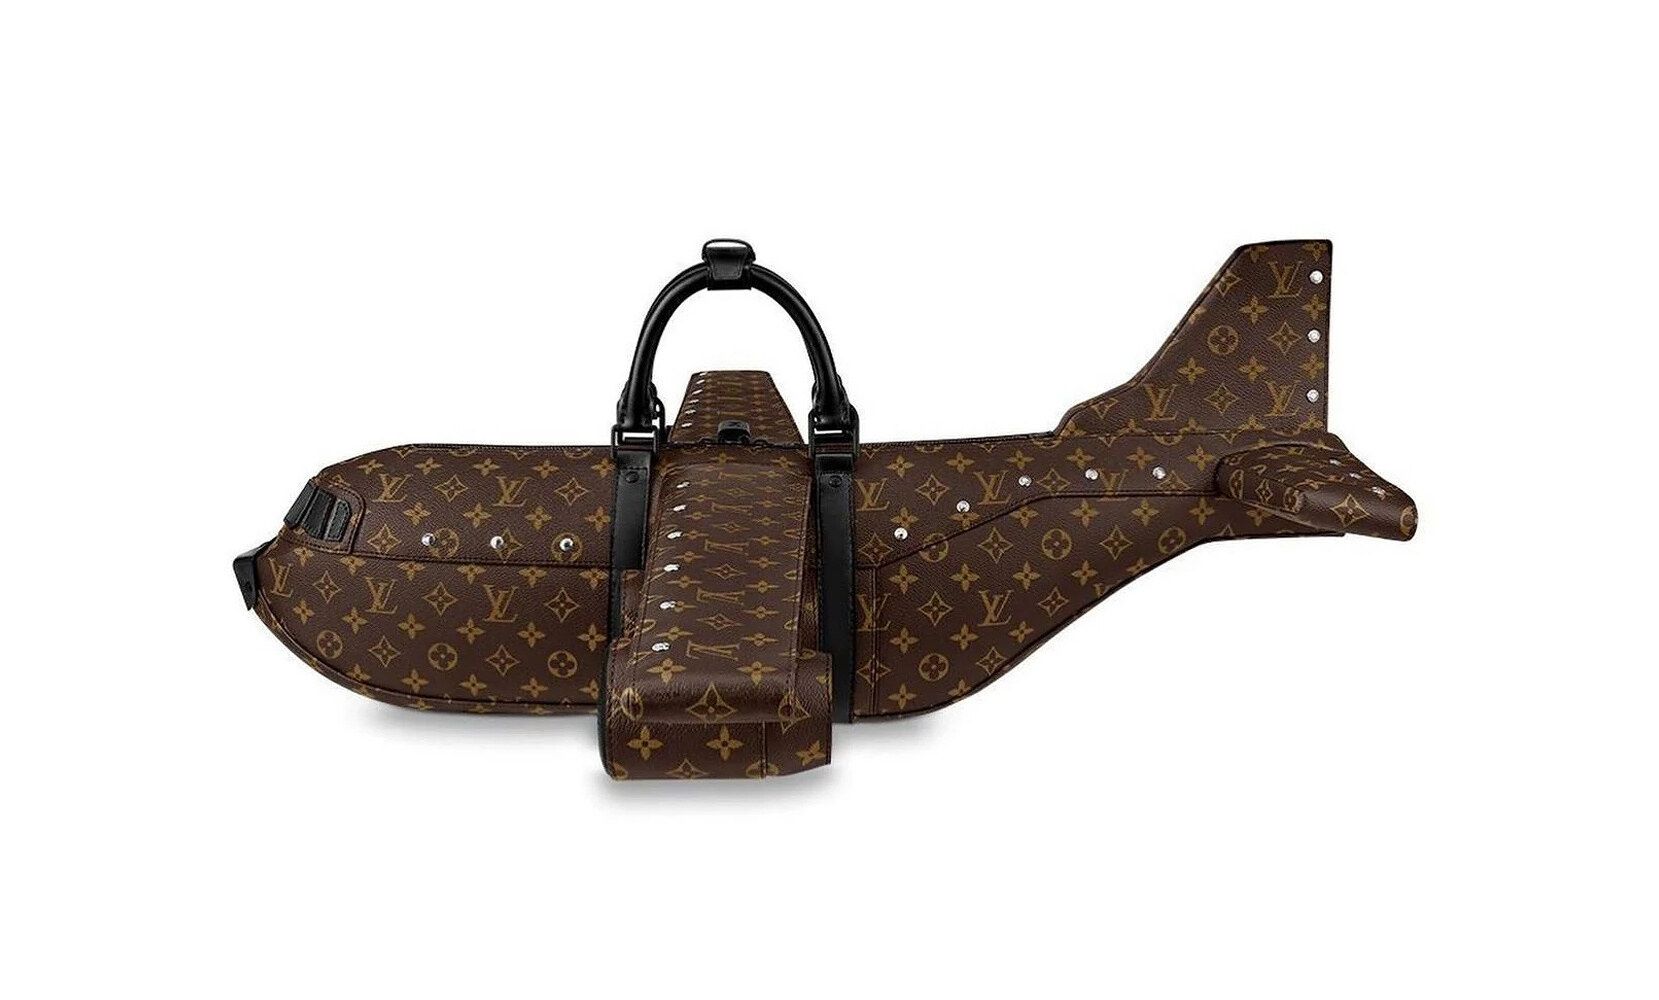 La borsa aeroplano di Louis Vuitton da 33mila euro ha scatenato